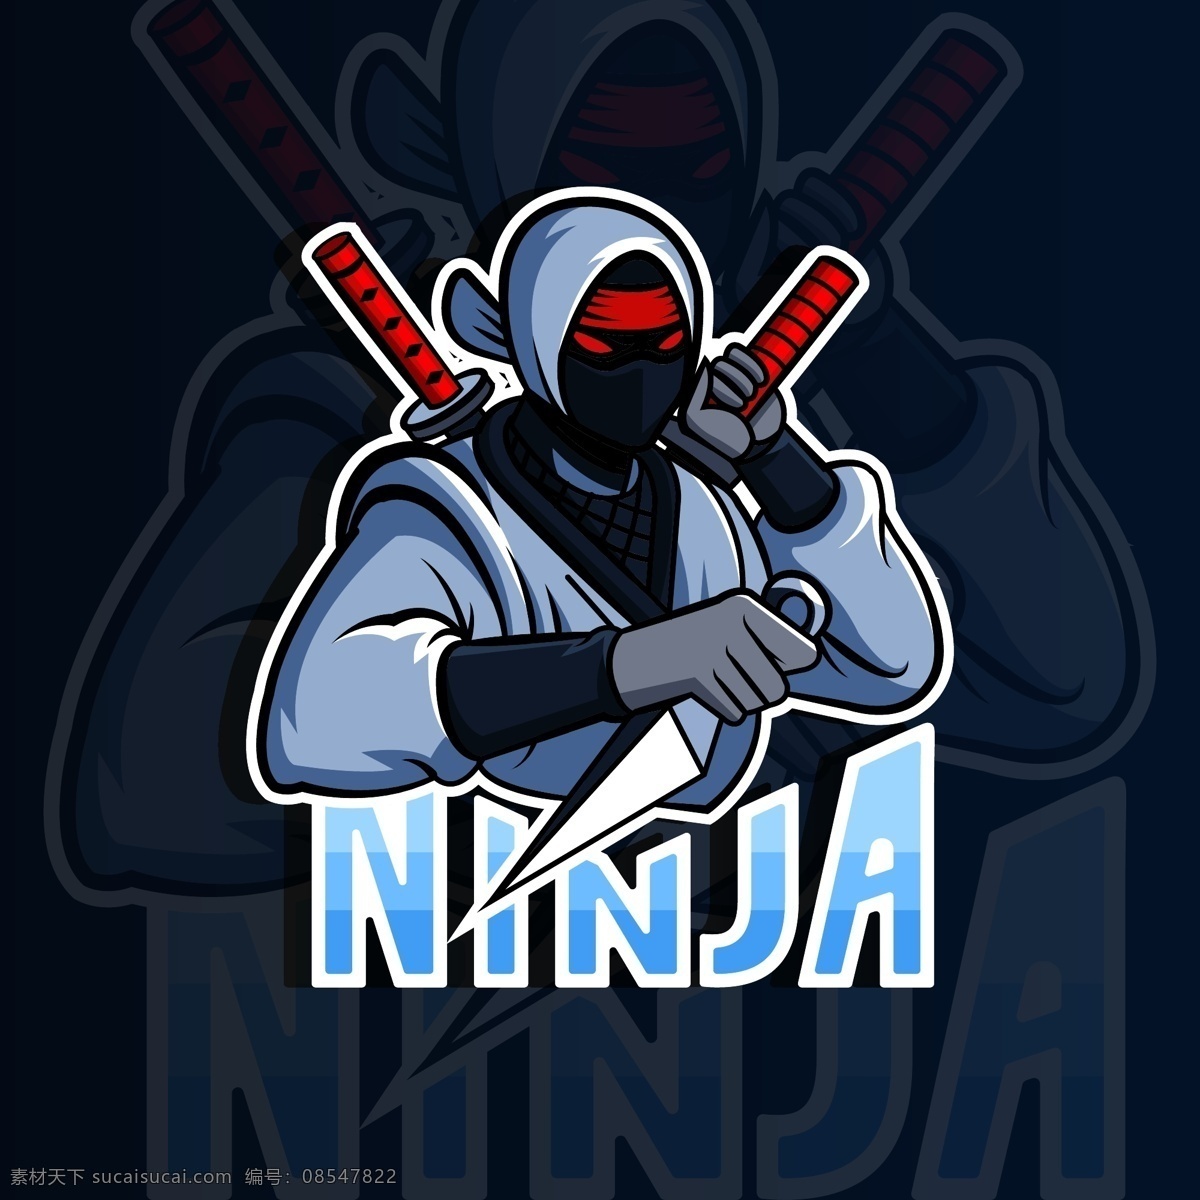 忍 标志 矢量 素材图片 忍者标志矢量 忍者标志素材 忍者标志 忍者 ninja 电玩竞技标志 共享设计矢量 标志图标 其他图标